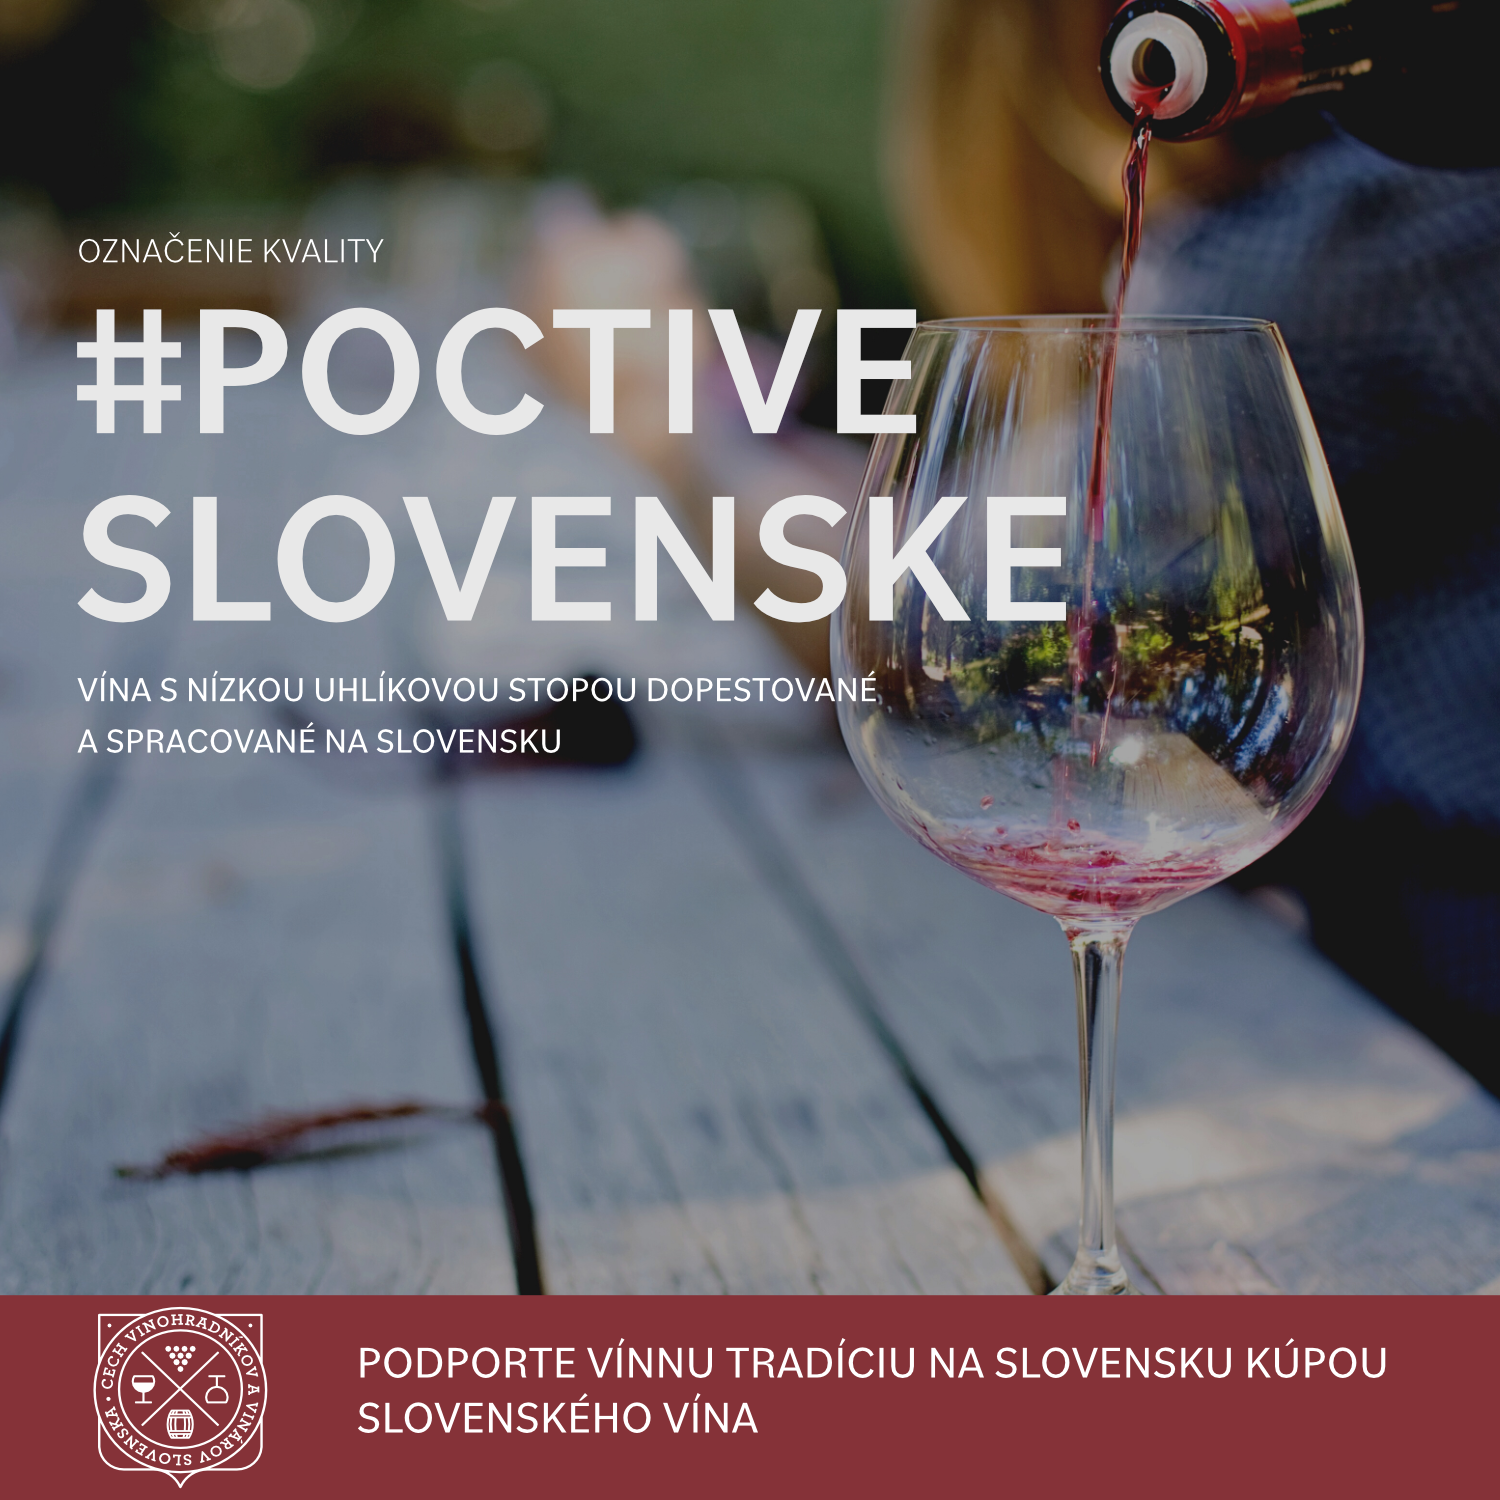 Aký má význam a prečo je dôležité kúpiť na sviatky slovenské víno?